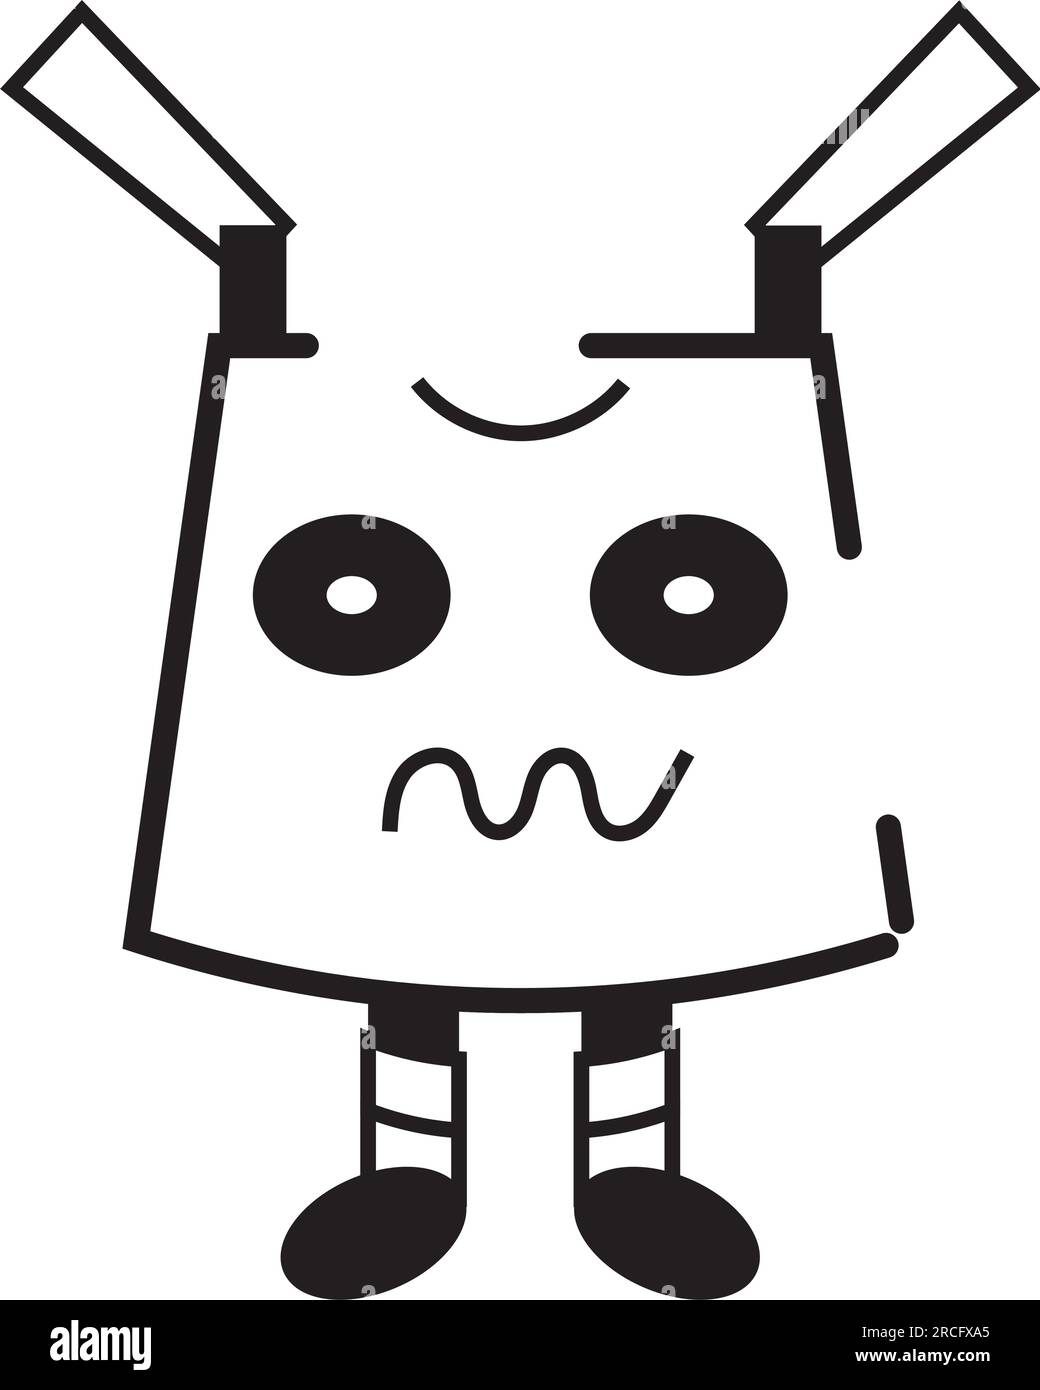 Vecteur d'icône de personnage de jouet de robot monochrome isolé Illustration de Vecteur